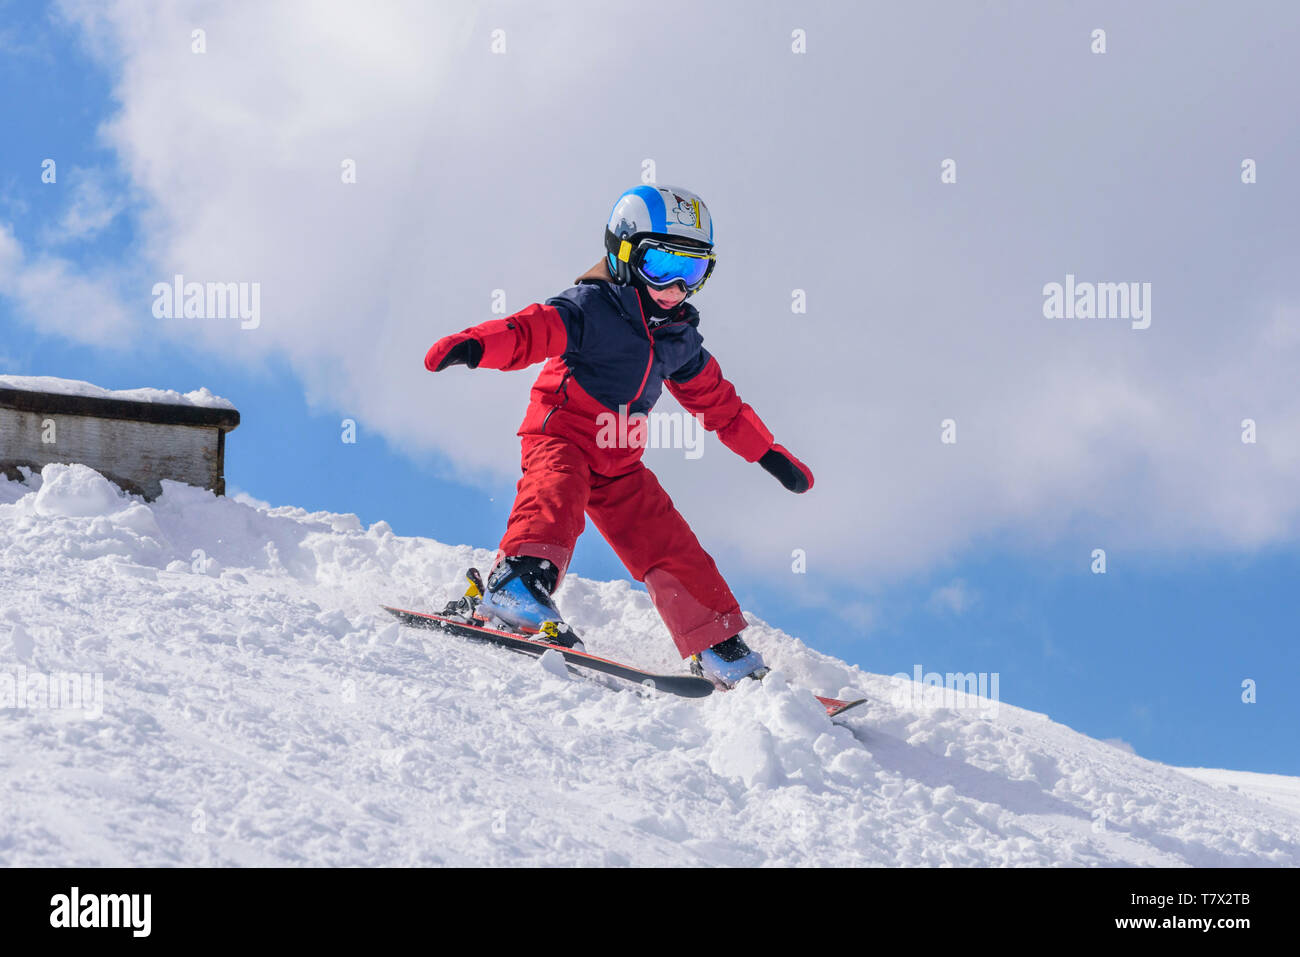 Cute little boy sur ski slope Banque D'Images